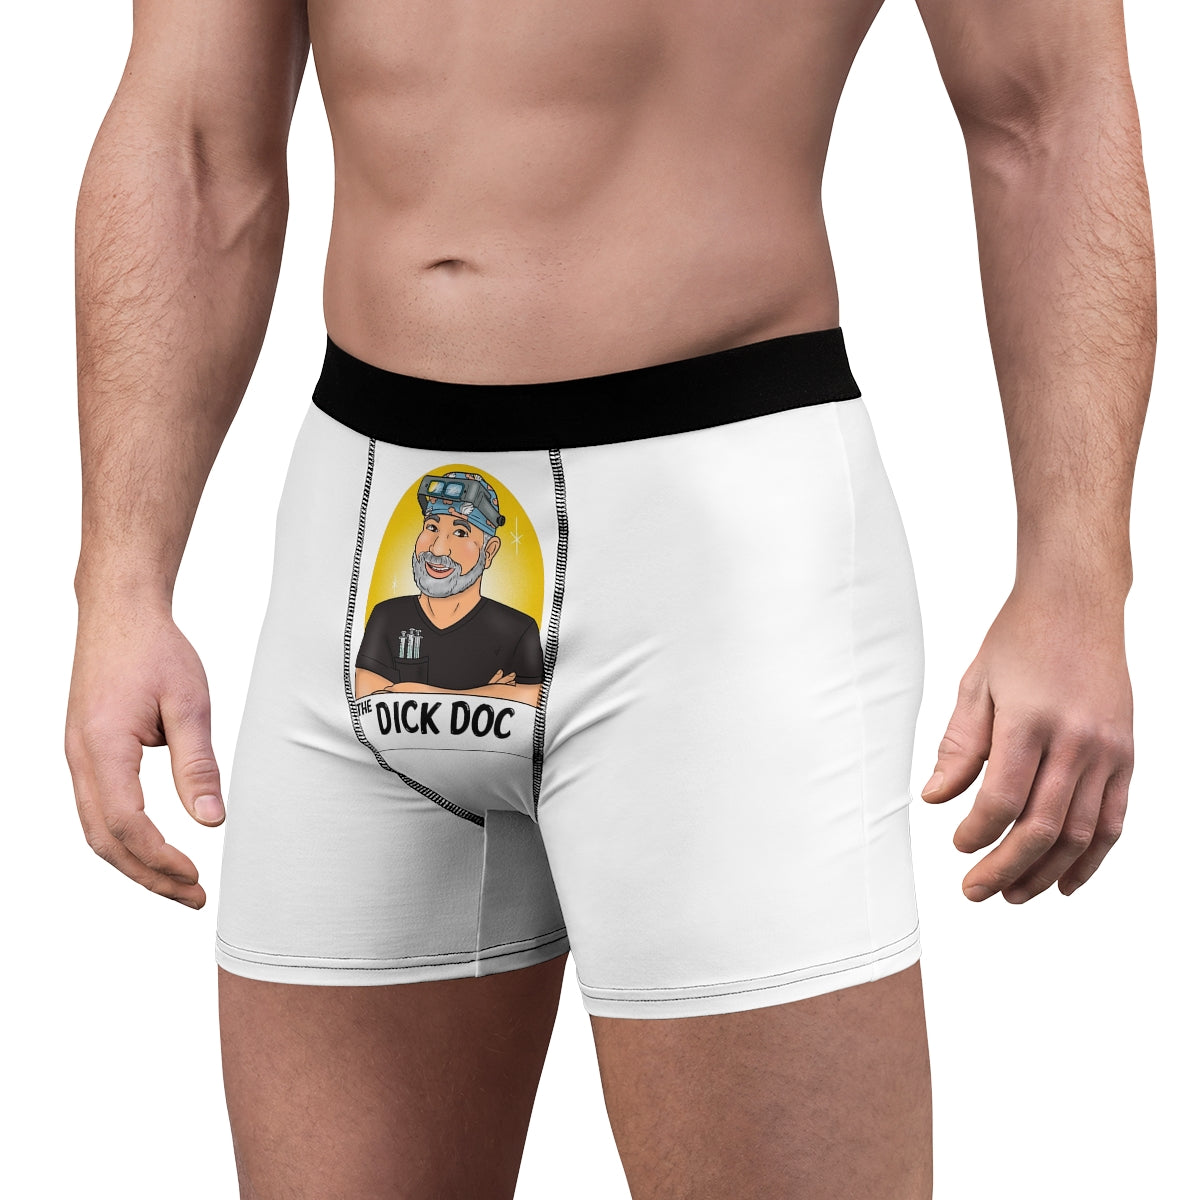 Guys Underwear: Guys Boxers & Funny Underwear